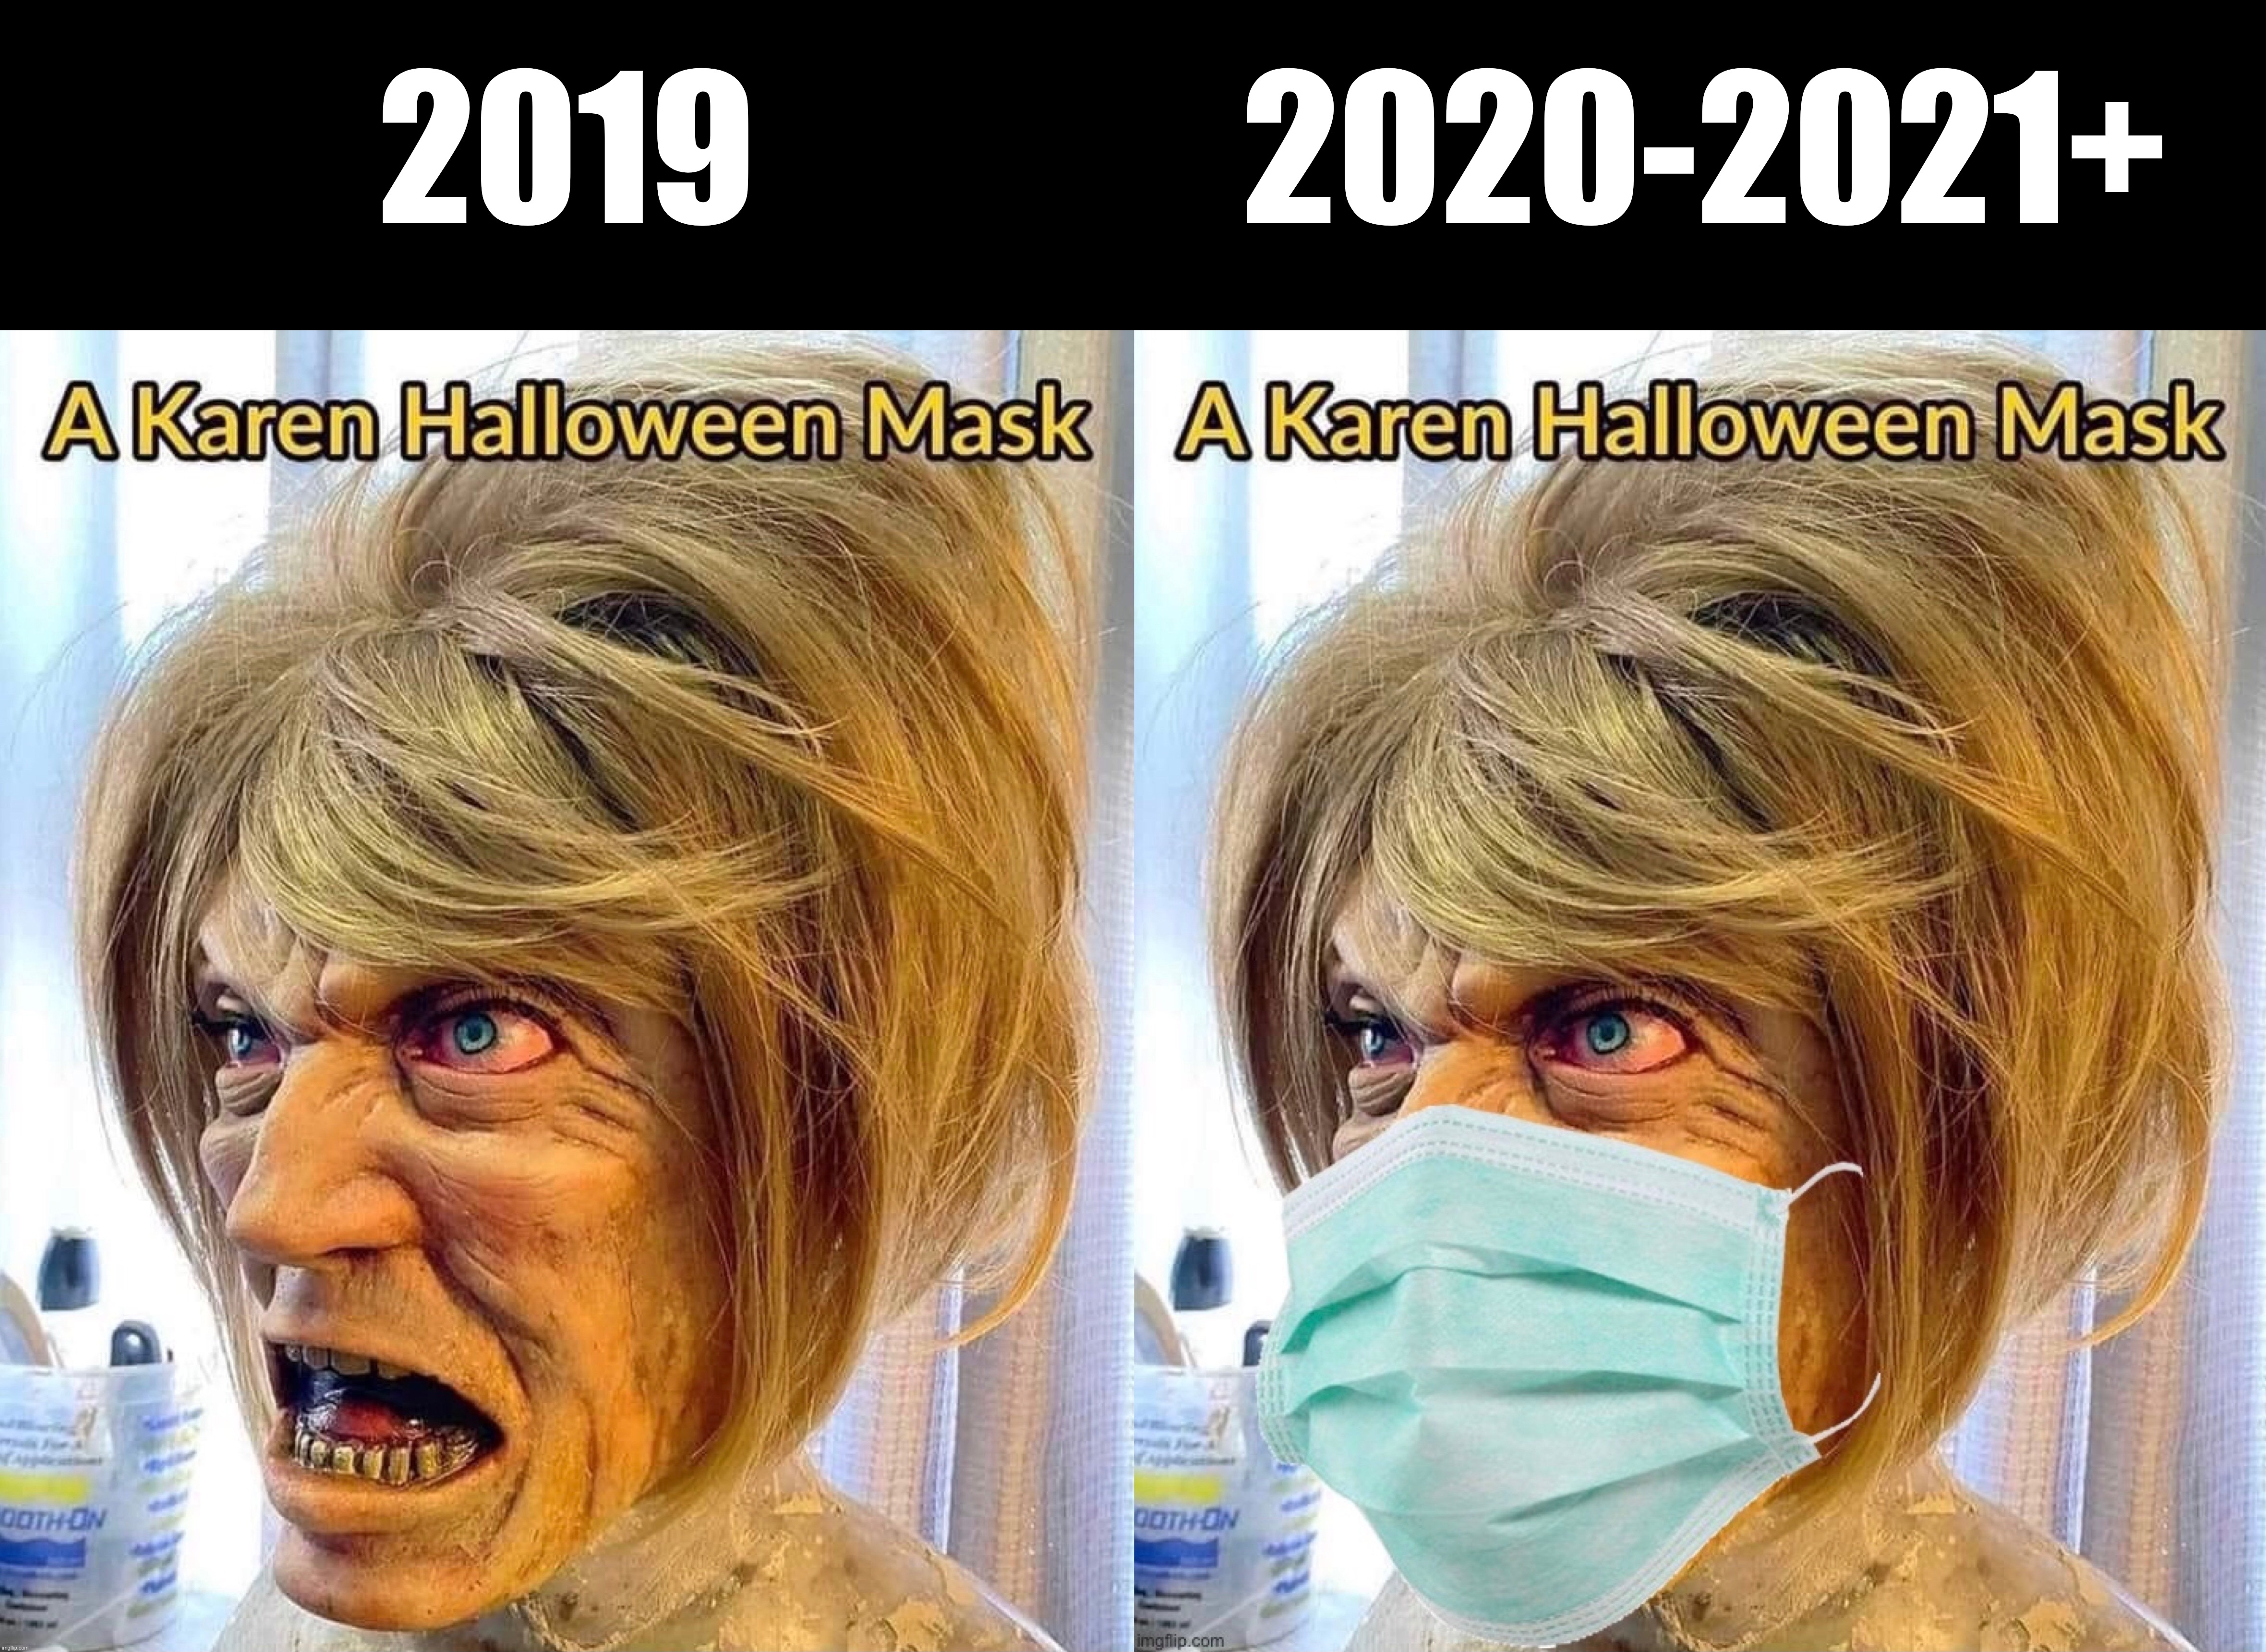 2019; 2020-2021+ | image tagged in covid,karen,karens,halloween,mask,china virus | made w/ Imgflip meme maker